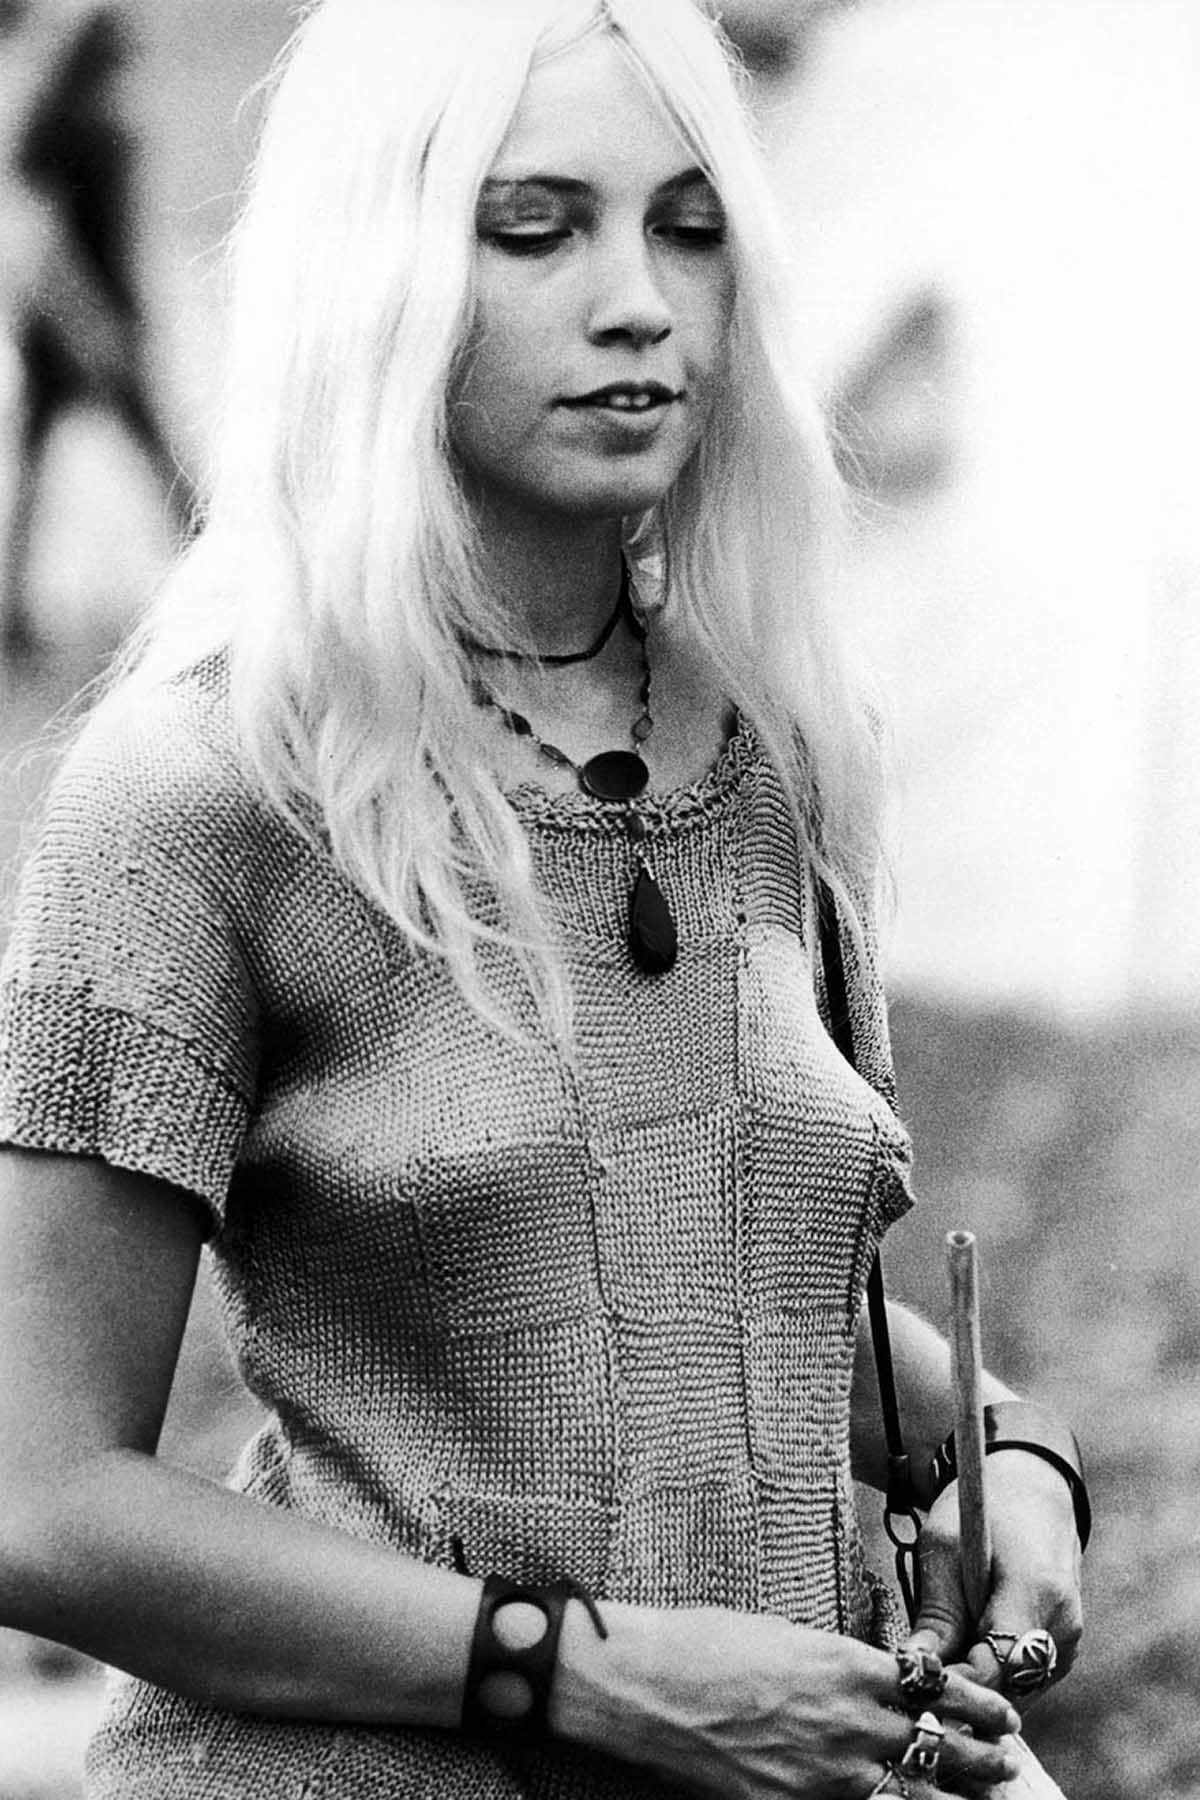 Fotos impressionantes retratam a moda rebelde de Woodstock em 1969 34